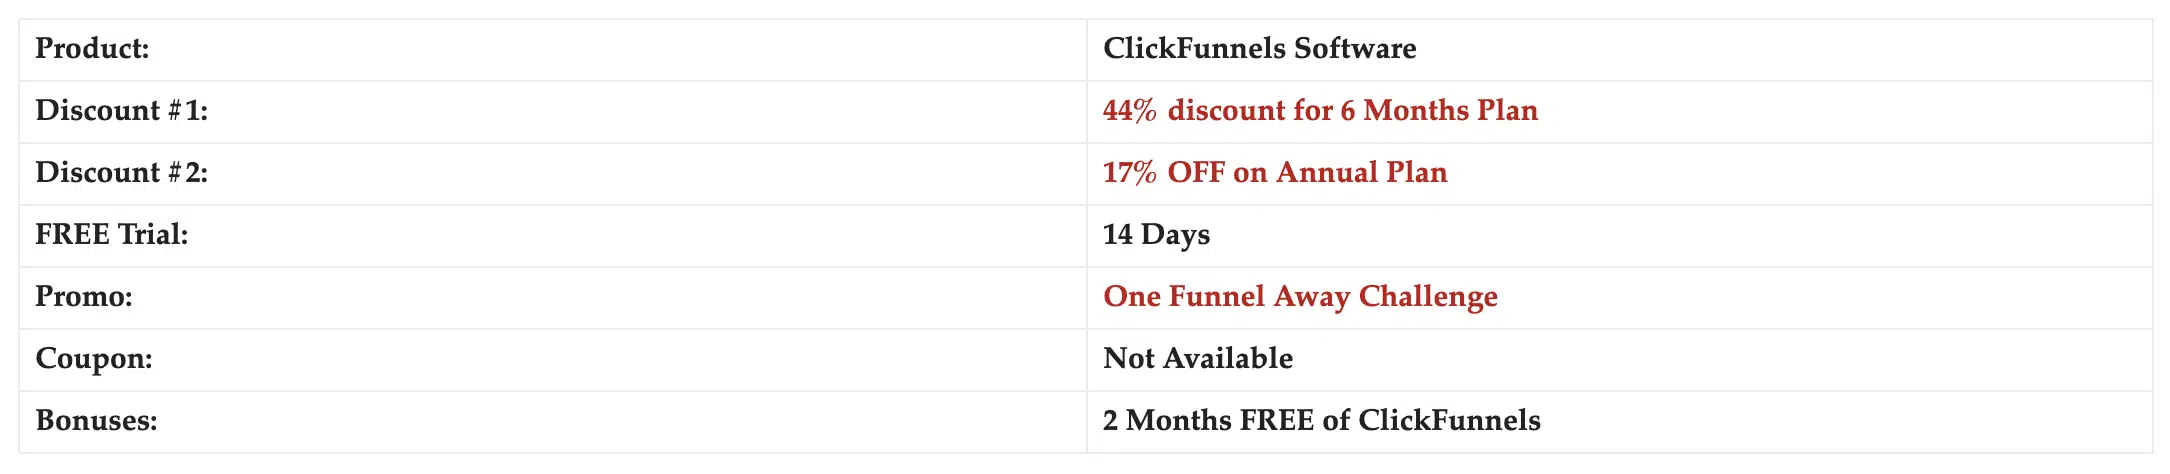 Clickfunnels discount